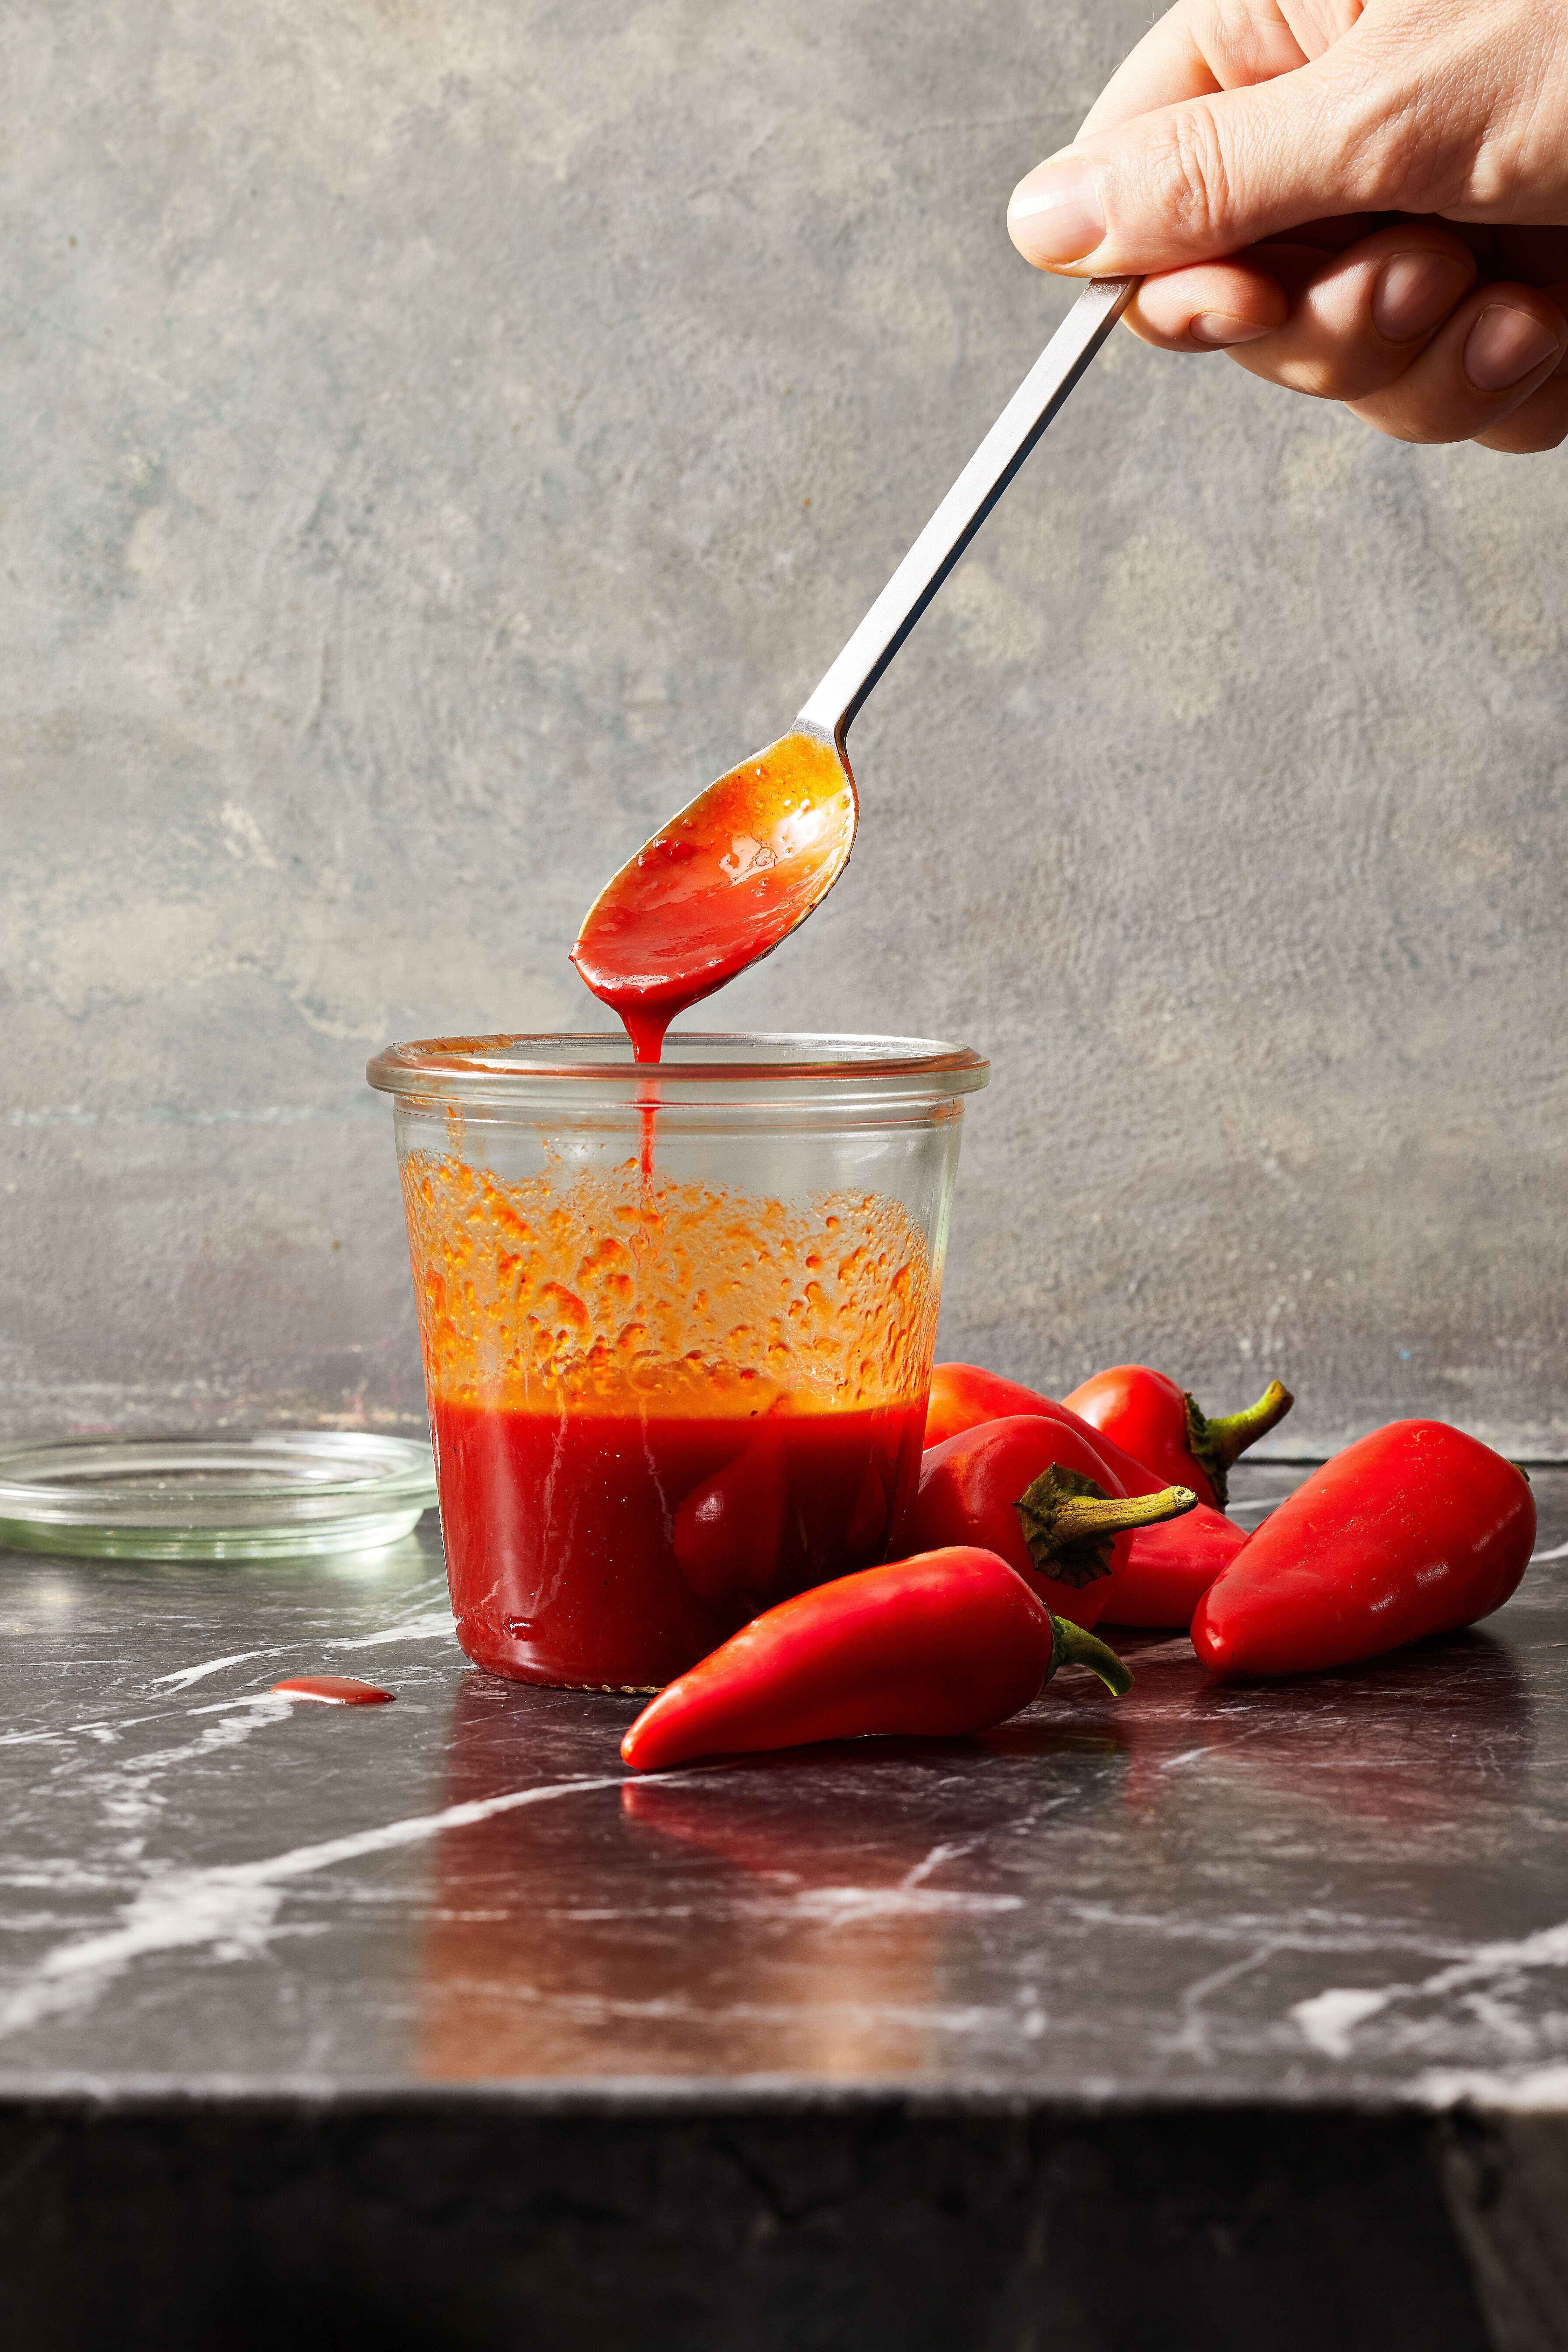 Best Homemade Sriracha Recipe - How To Make Homemade Sriracha